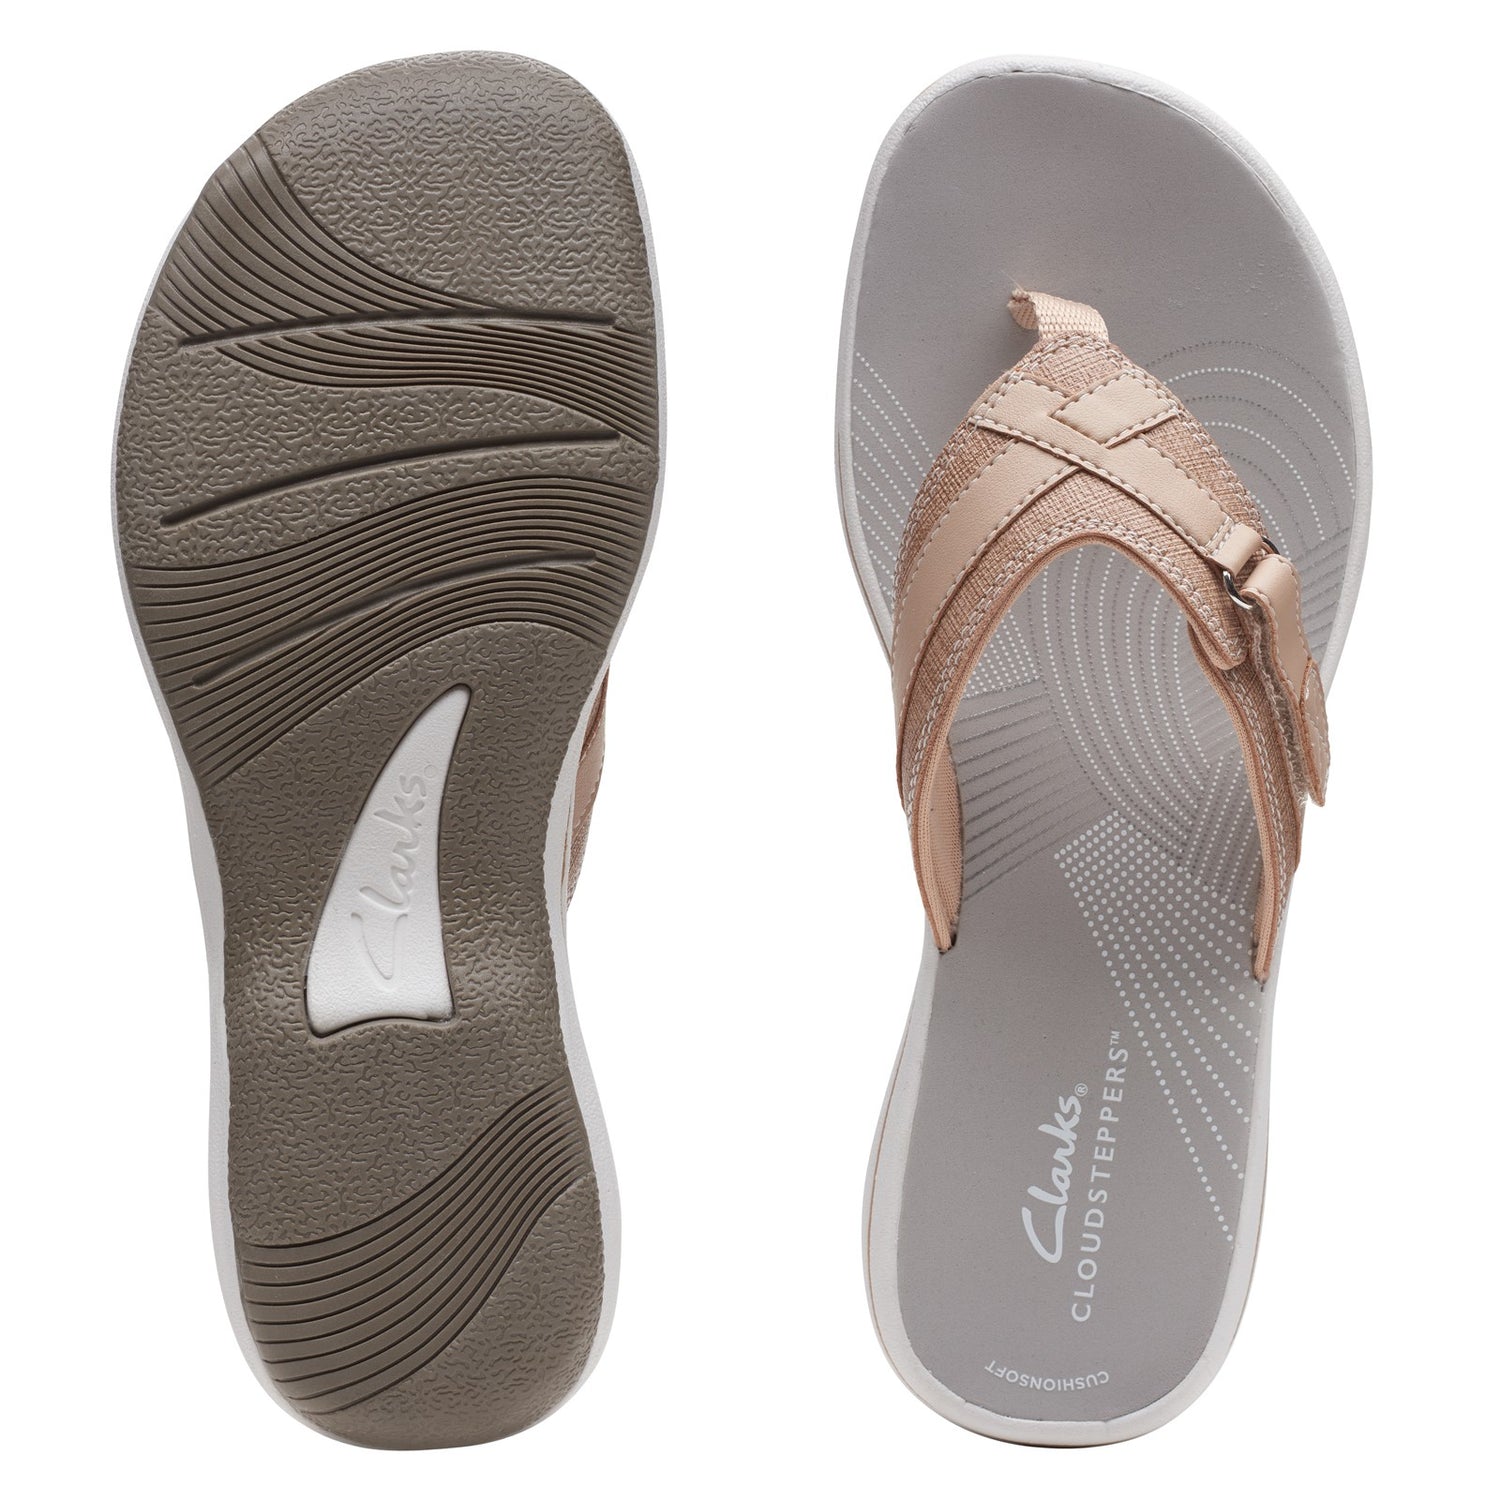 Peltz Shoes  Women's Clarks Breeze Sea Sandal TAUPE 26164626